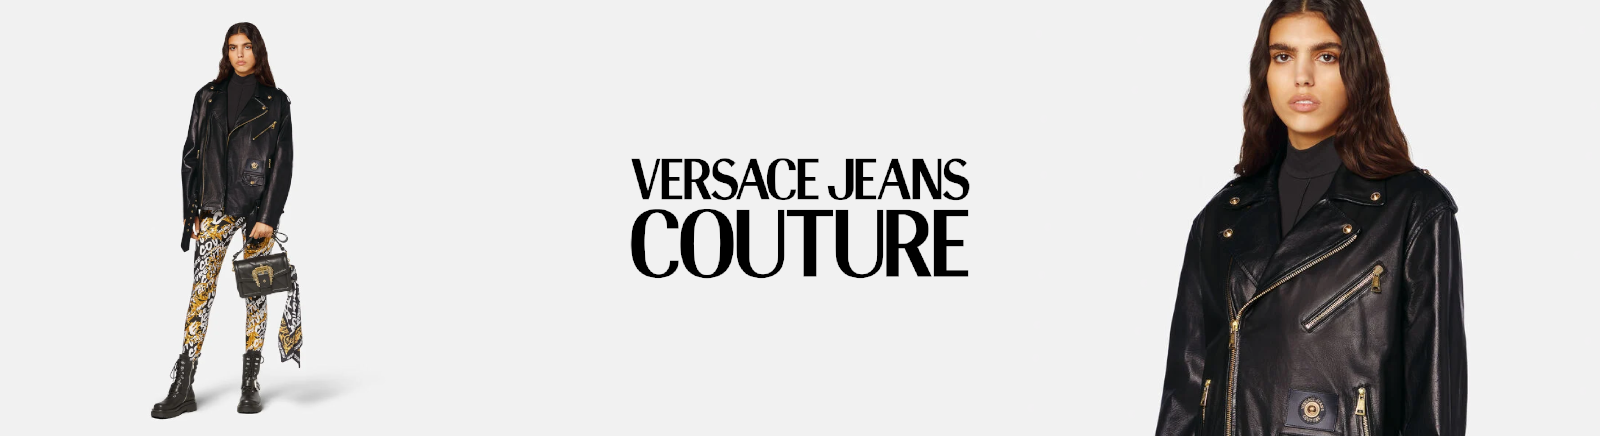 Versace Jeans Couture Herrenschuhe online bestellen bei Prange